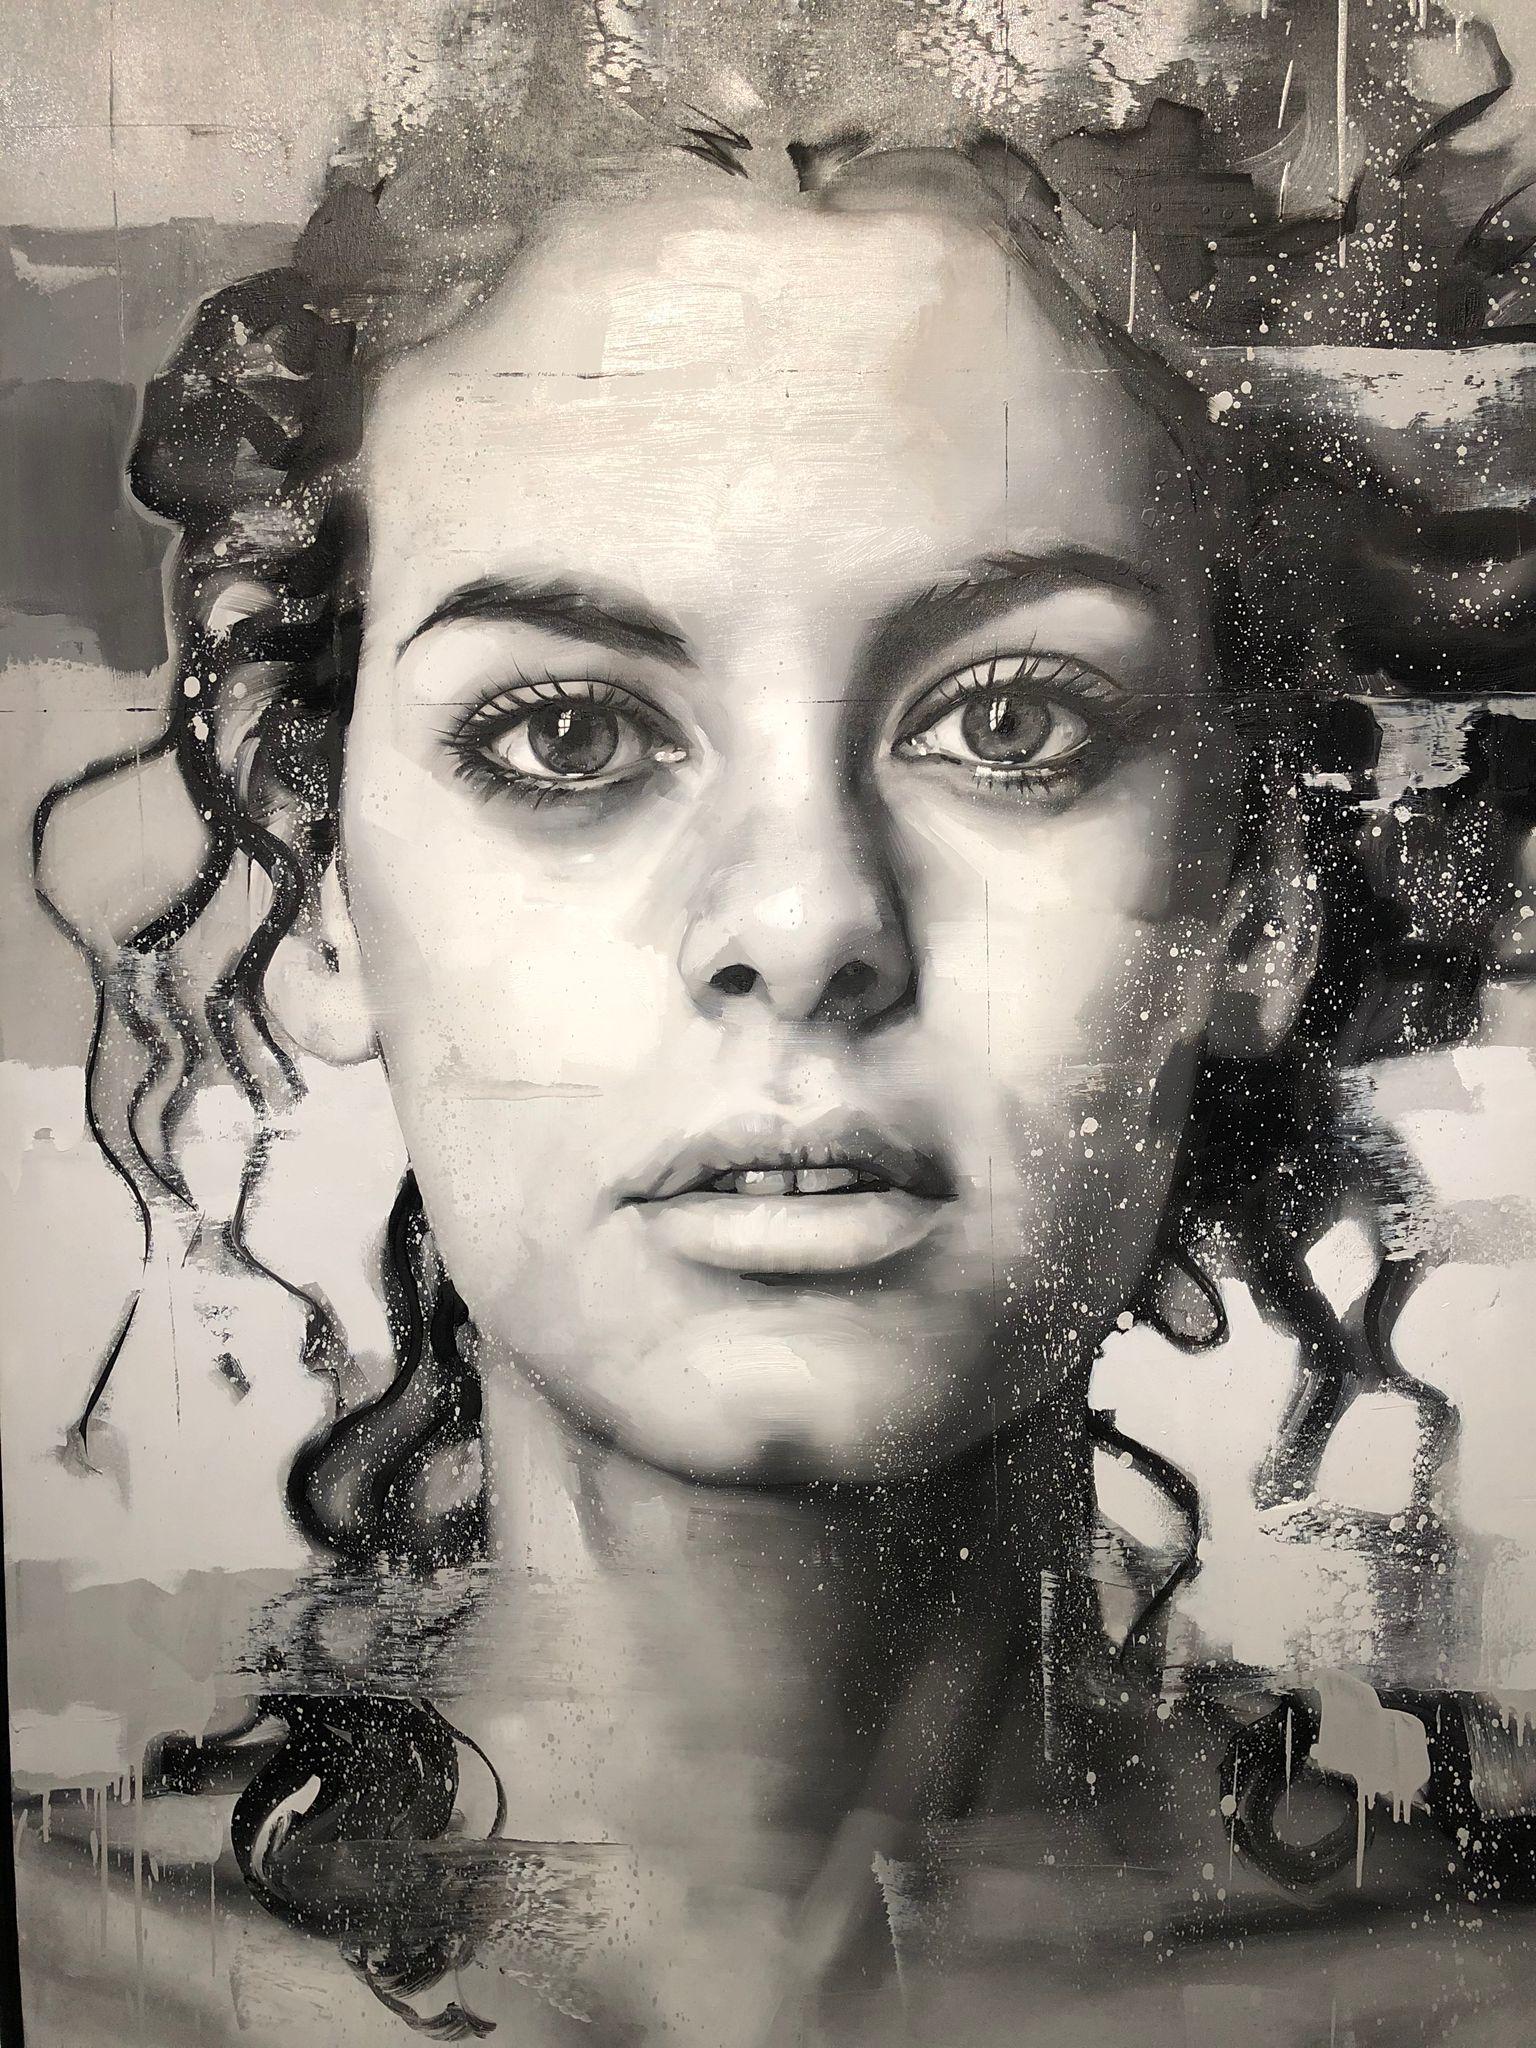 Claire de lune - Gray Portrait Painting by Silvio Porzionato